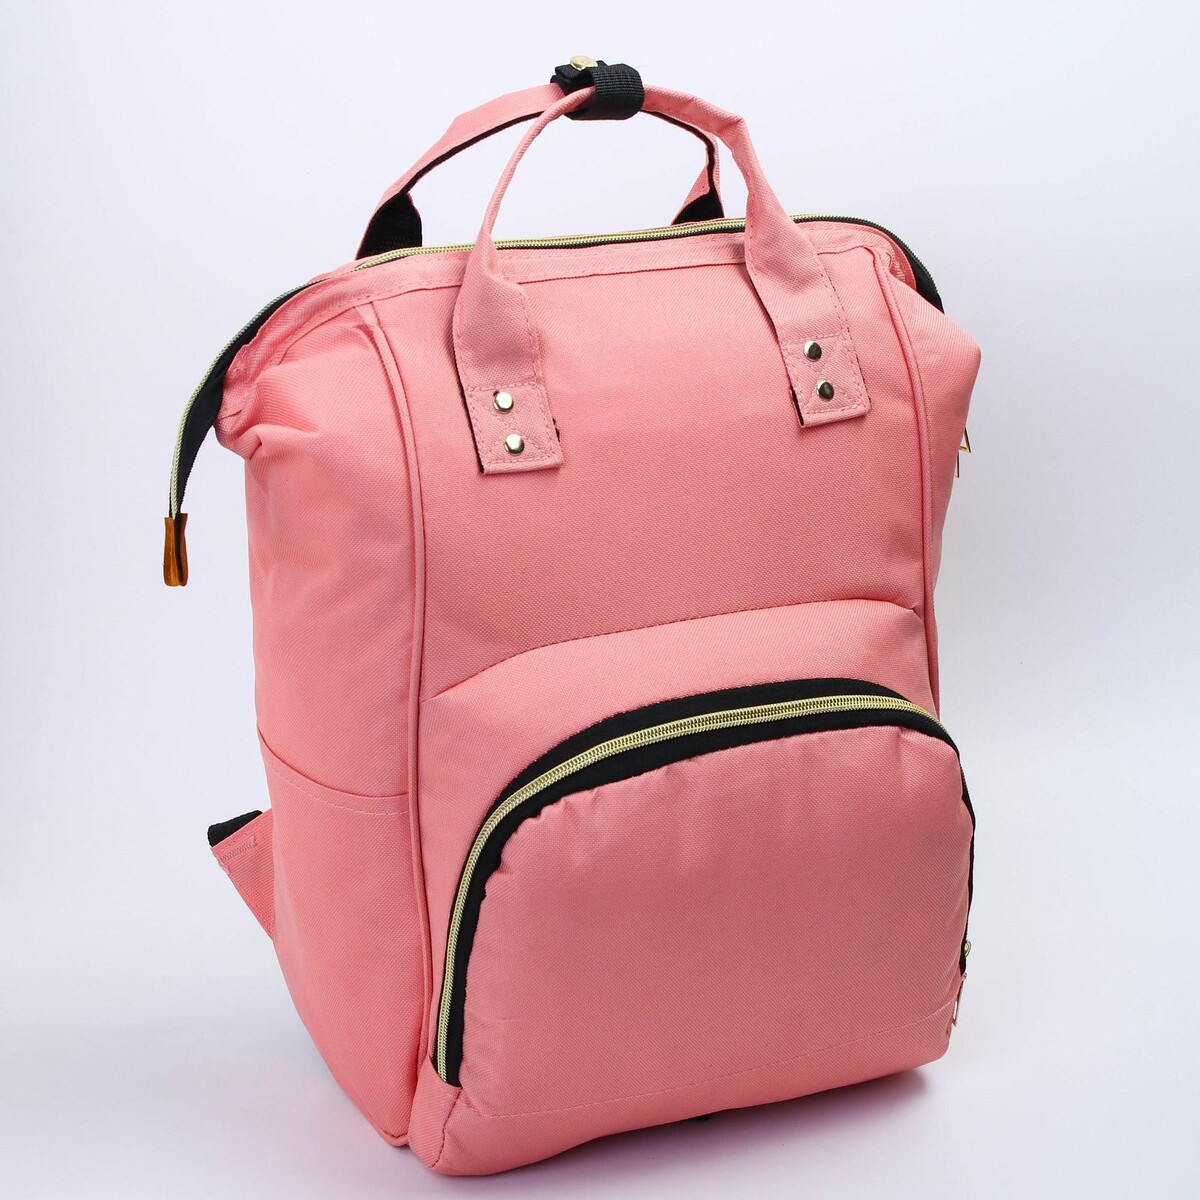 Рюкзак женский с термокарманом, термосумка - портфель, цвет розовый рюкзак kingkong i 10 wb 9062 черн средний фоторюкзак